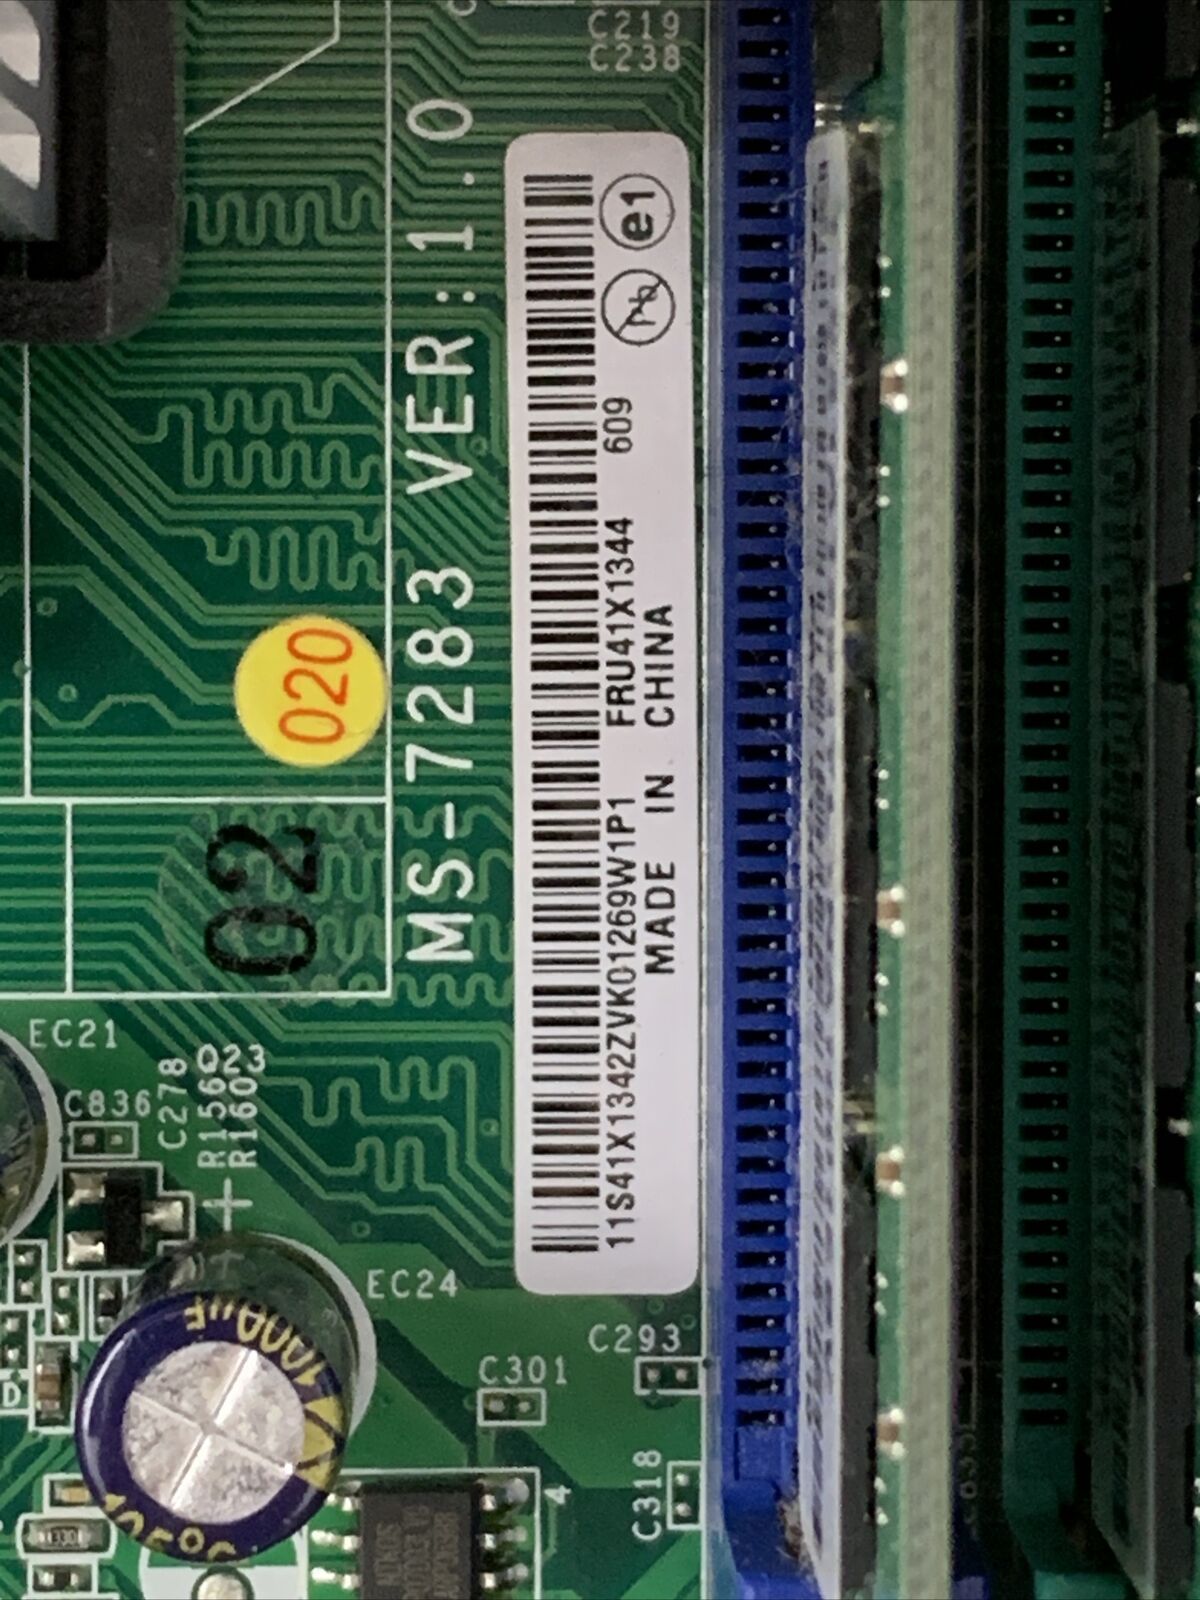 Lenovo 7387-26U MT AMD Athlon 64 x2 2GHz 1GB RAM No HDD No OS